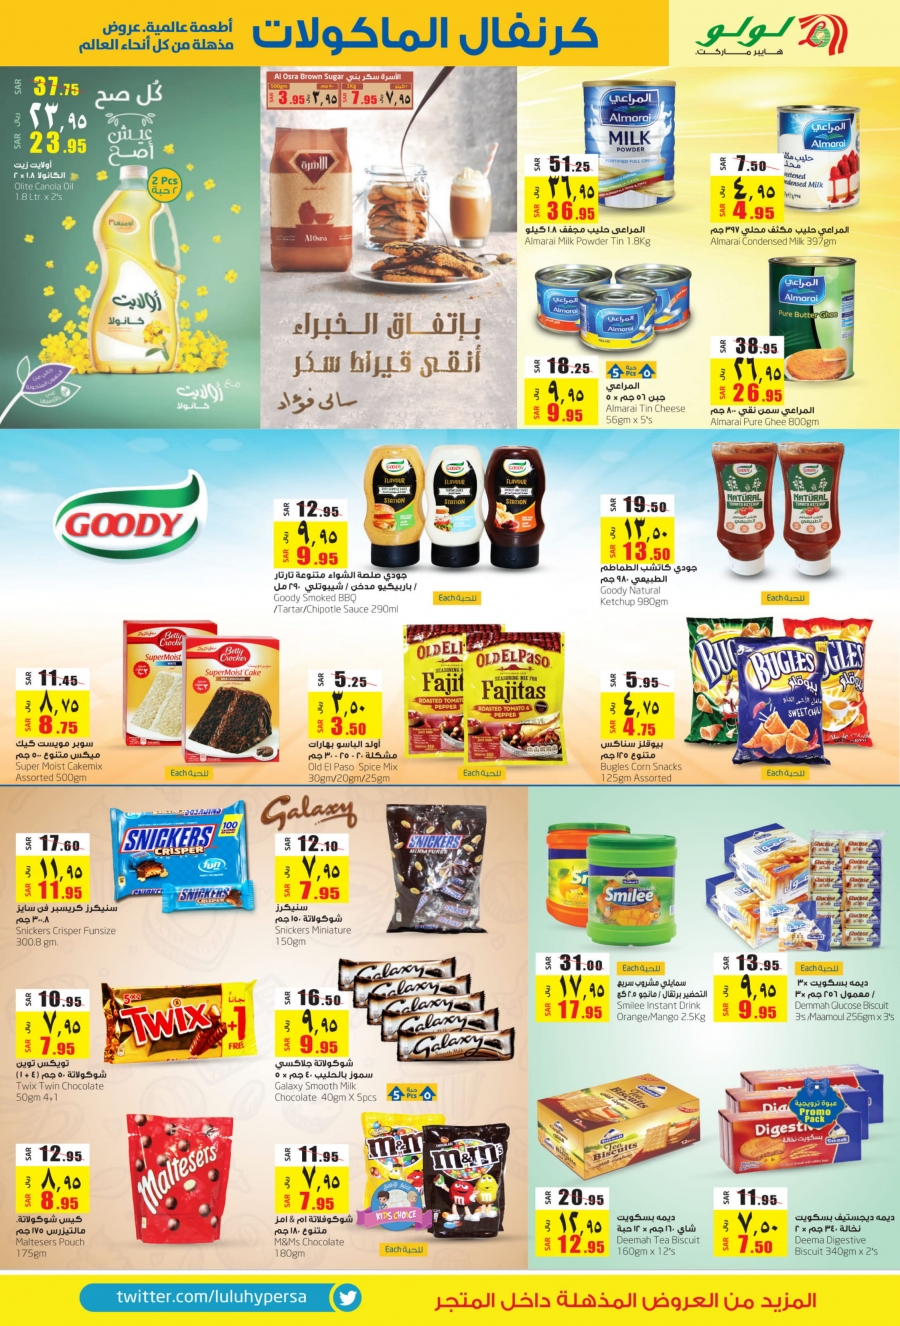 Lulu Hypermarket Food Carnival Deals